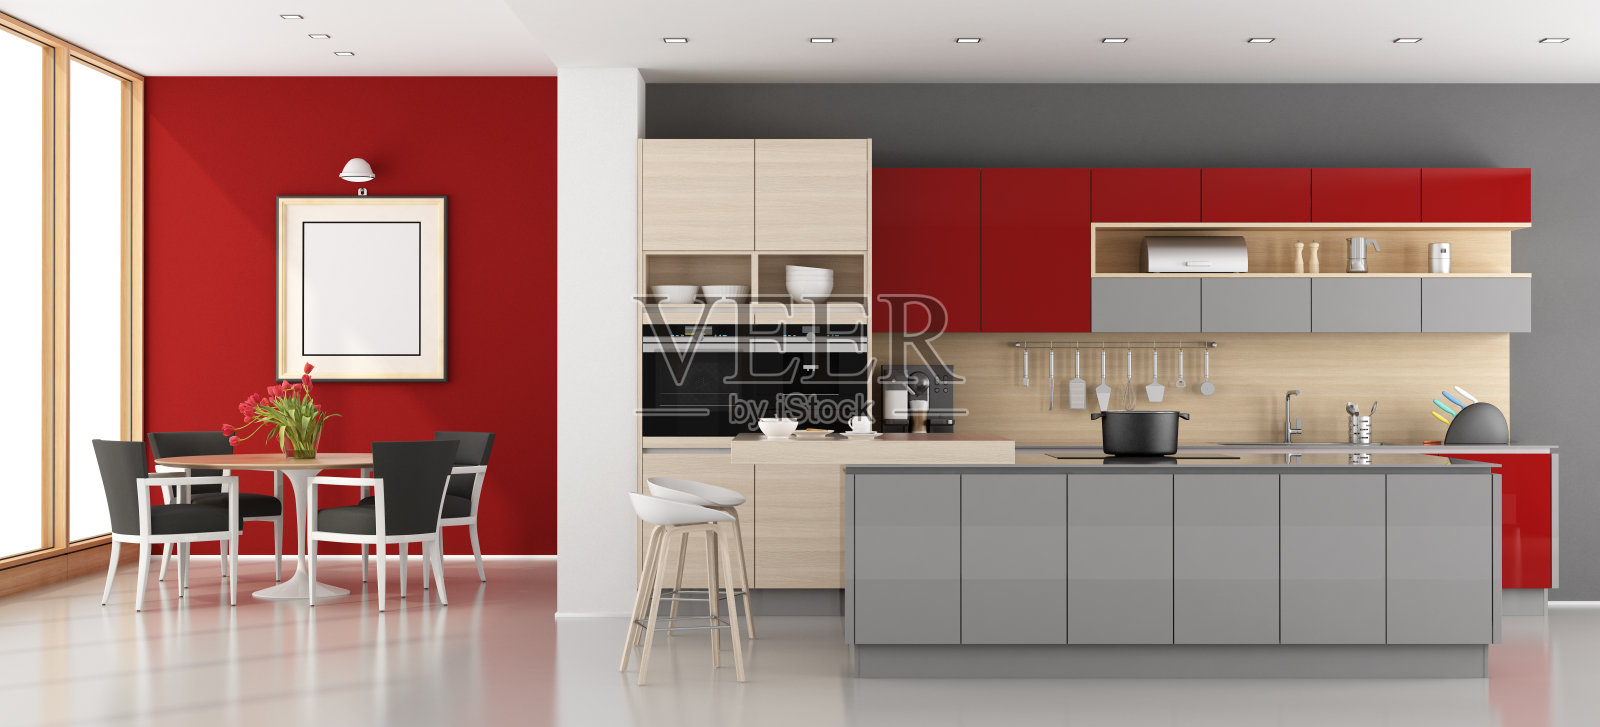 红色和灰色的现代厨房照片摄影图片